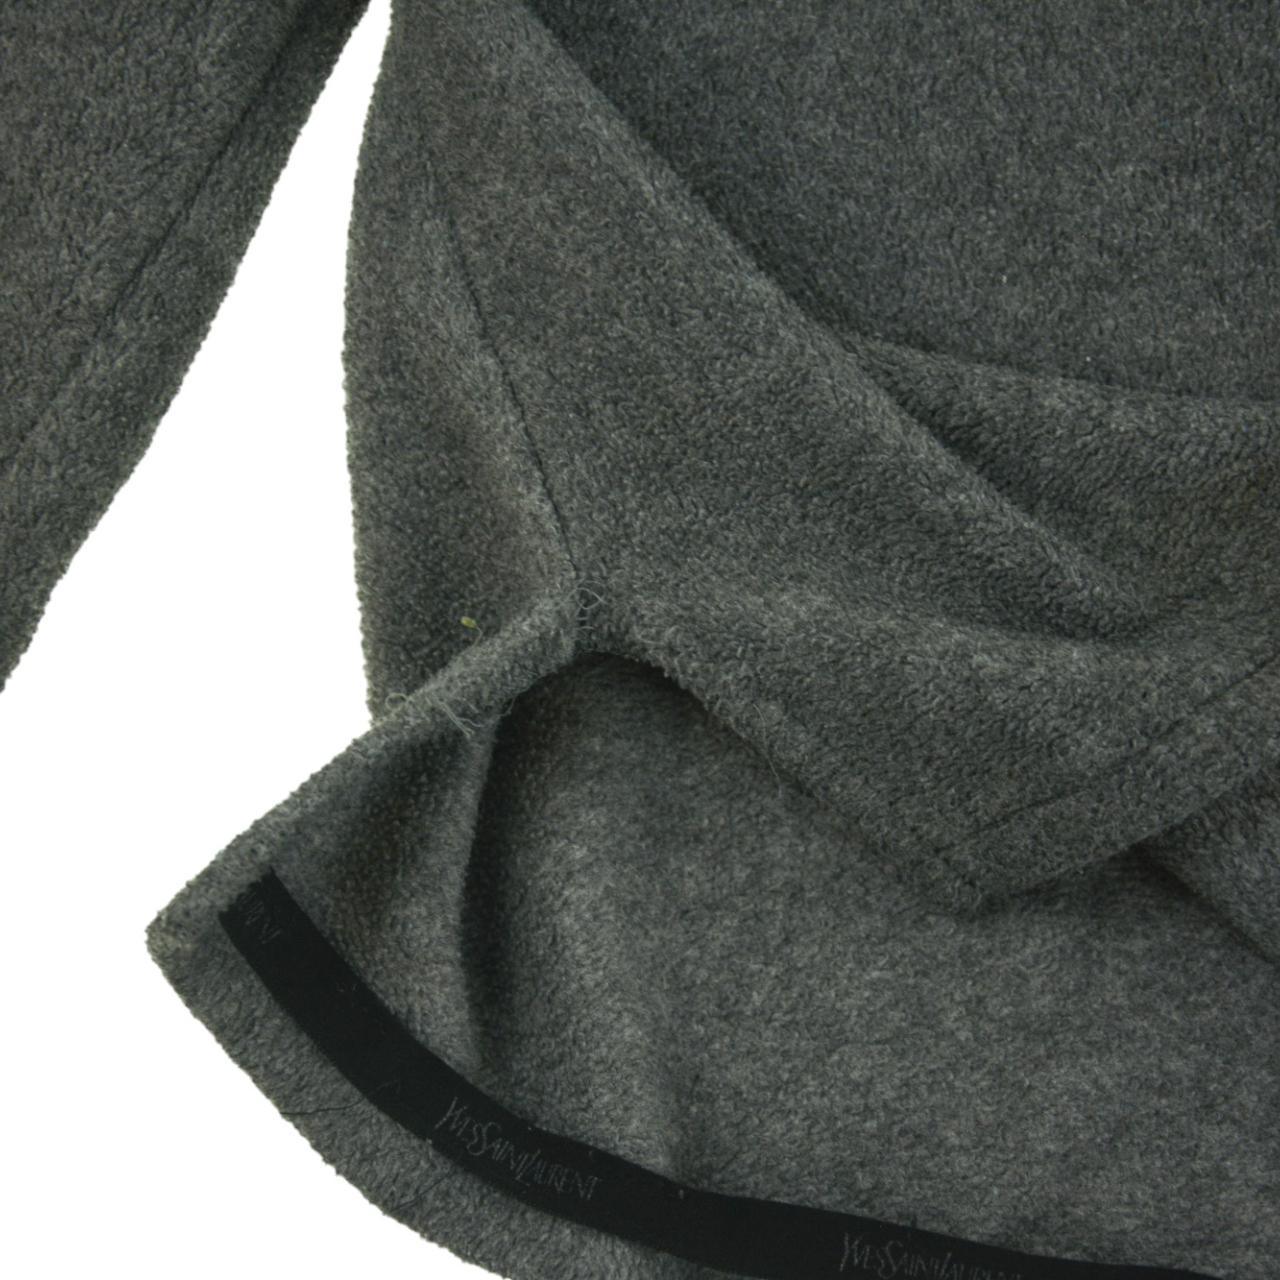 Vintage YSL Yves Saint Laurent Q Zip Fleece Size L - Known Source